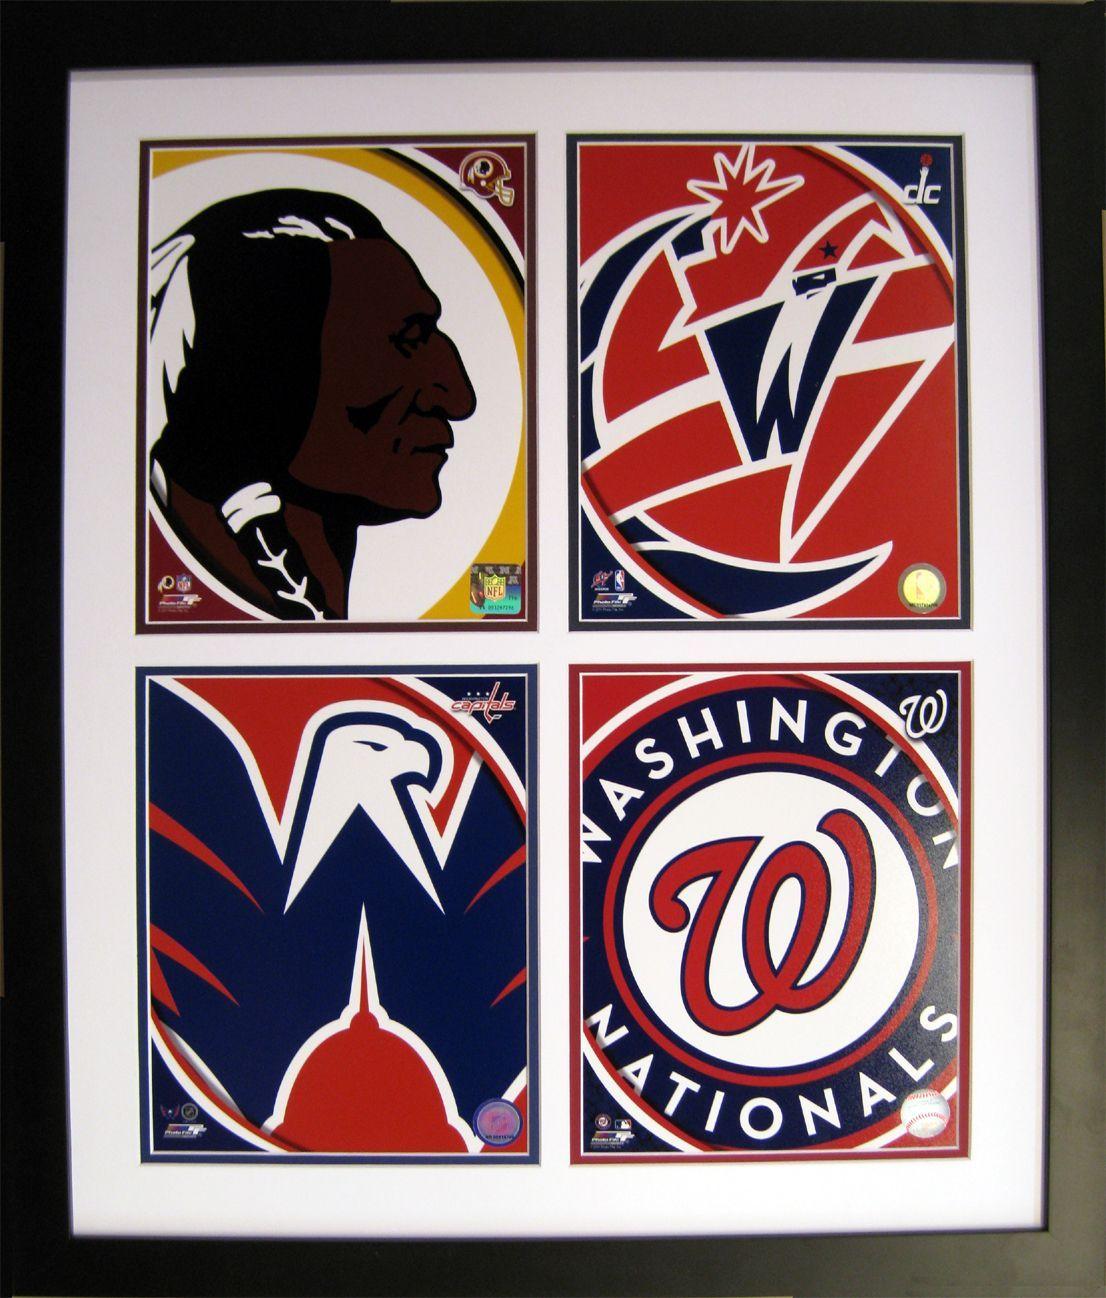 DC Wizards Logo - Washington, D.C. logo quad Redskins, Wizards, Capitals, Nationals ...